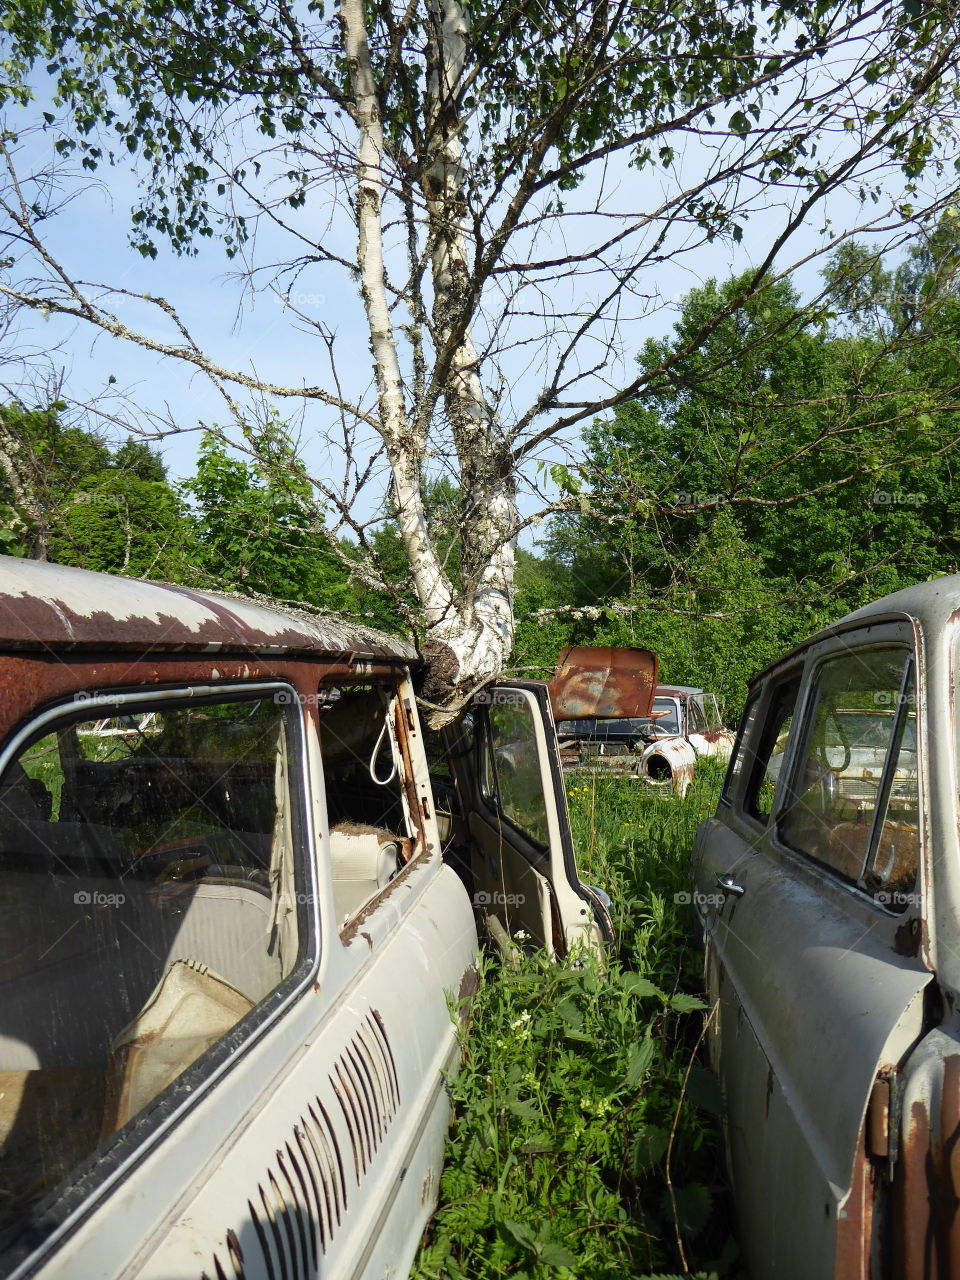 Tree in car